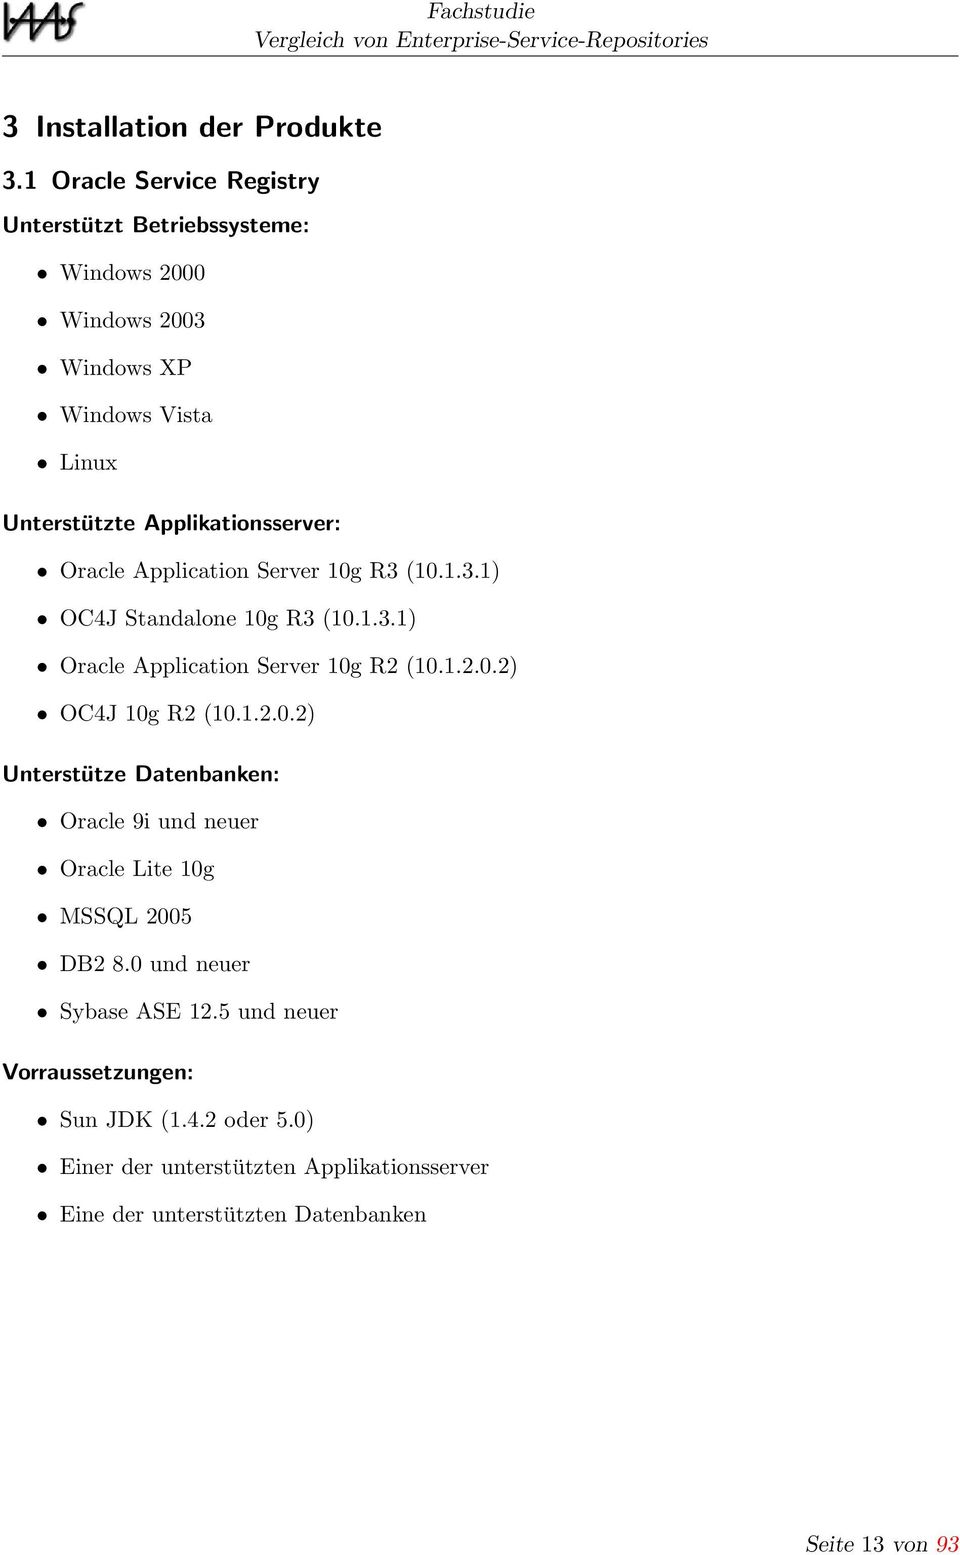 Applikationsserver: Oracle Application Server 10g R3 (10.1.3.1) OC4J Standalone 10g R3 (10.1.3.1) Oracle Application Server 10g R2 (10.1.2.0.2) OC4J 10g R2 (10.